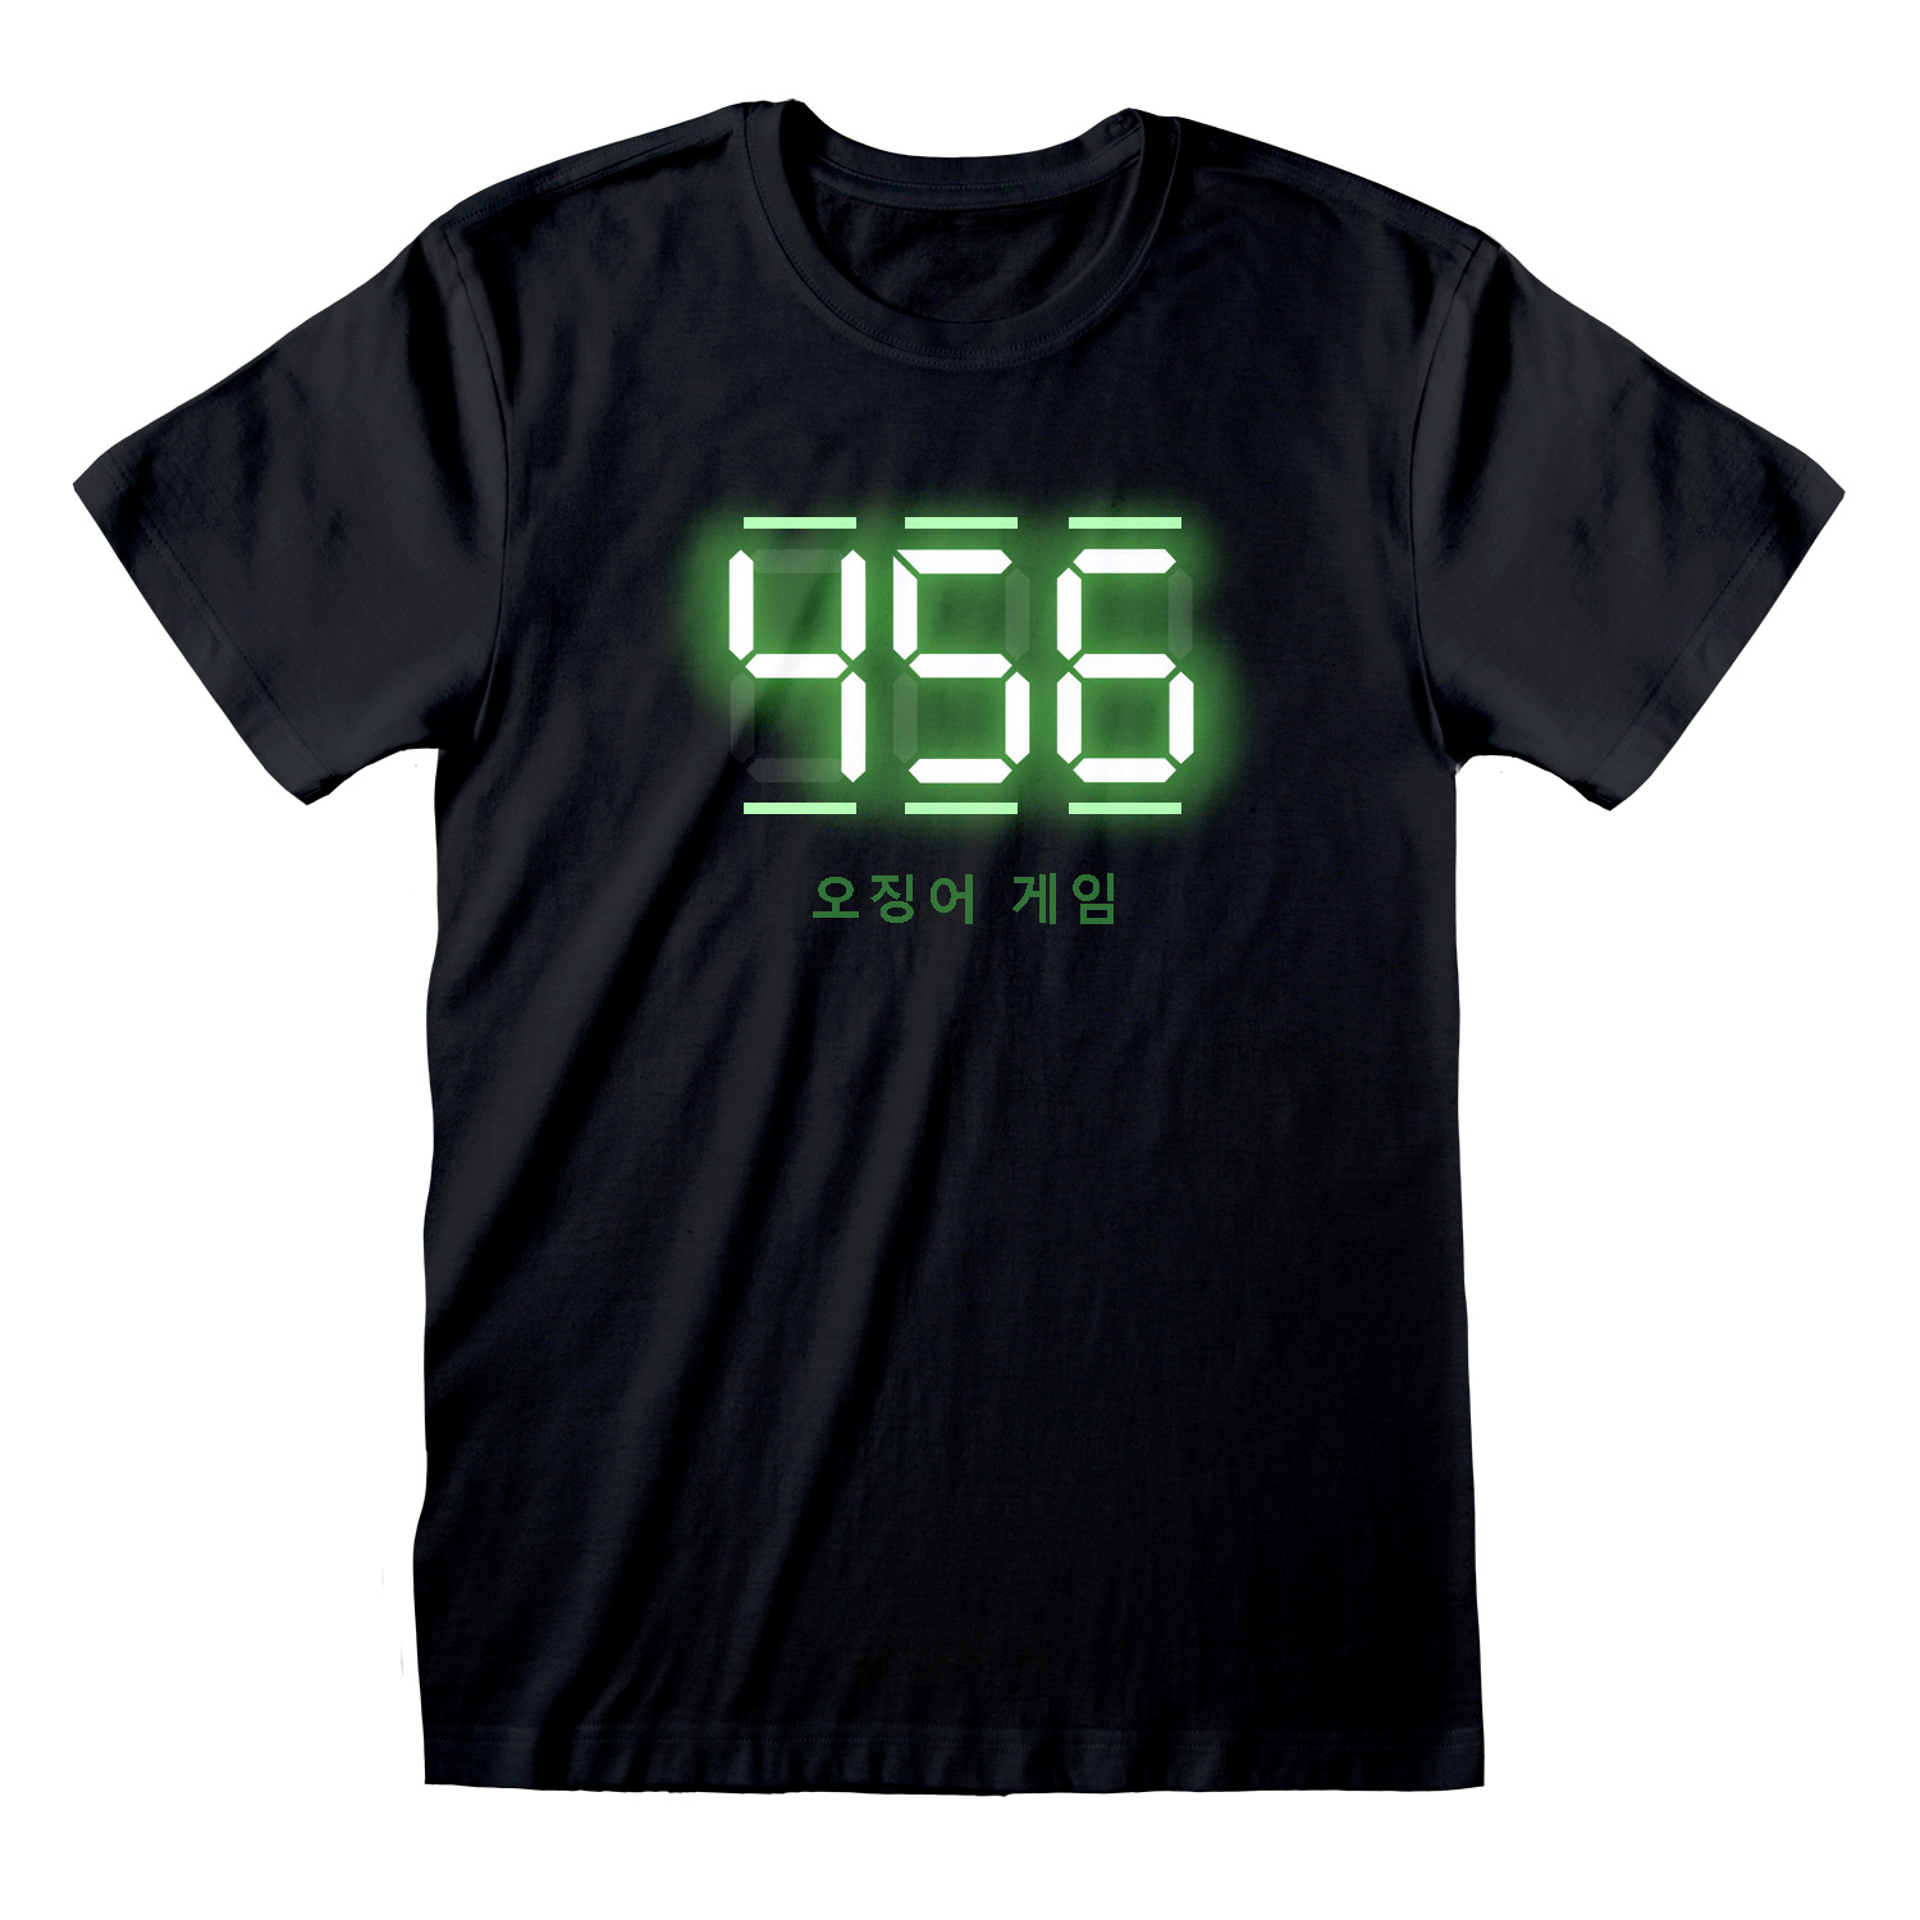 Squid Game - T-shirt unisexe Noir Texte numérique 456 - S